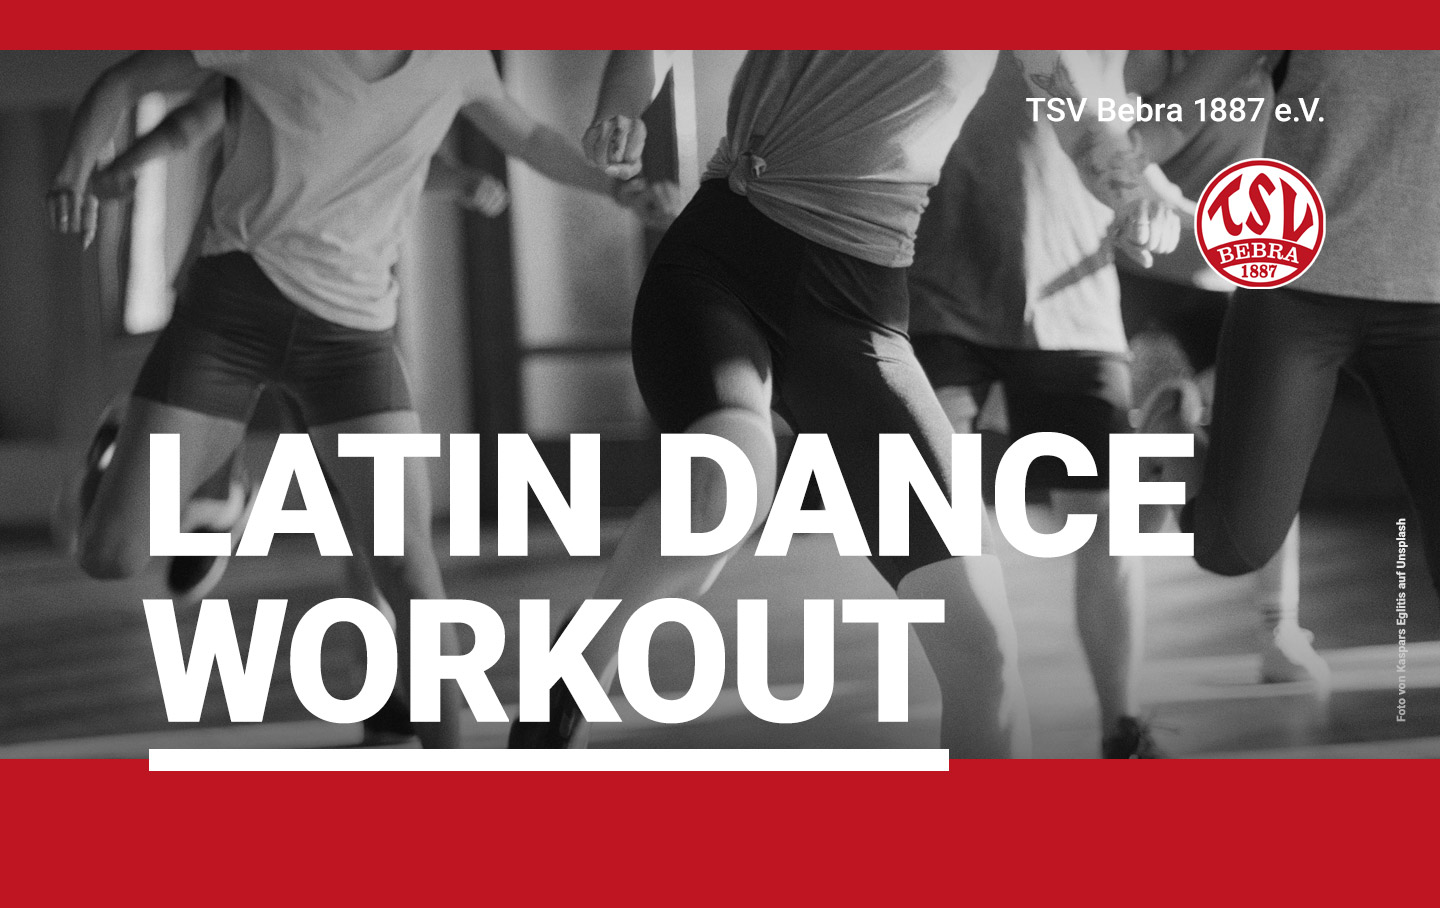 Latin Dance Workout ab dem 3. Mai 2022